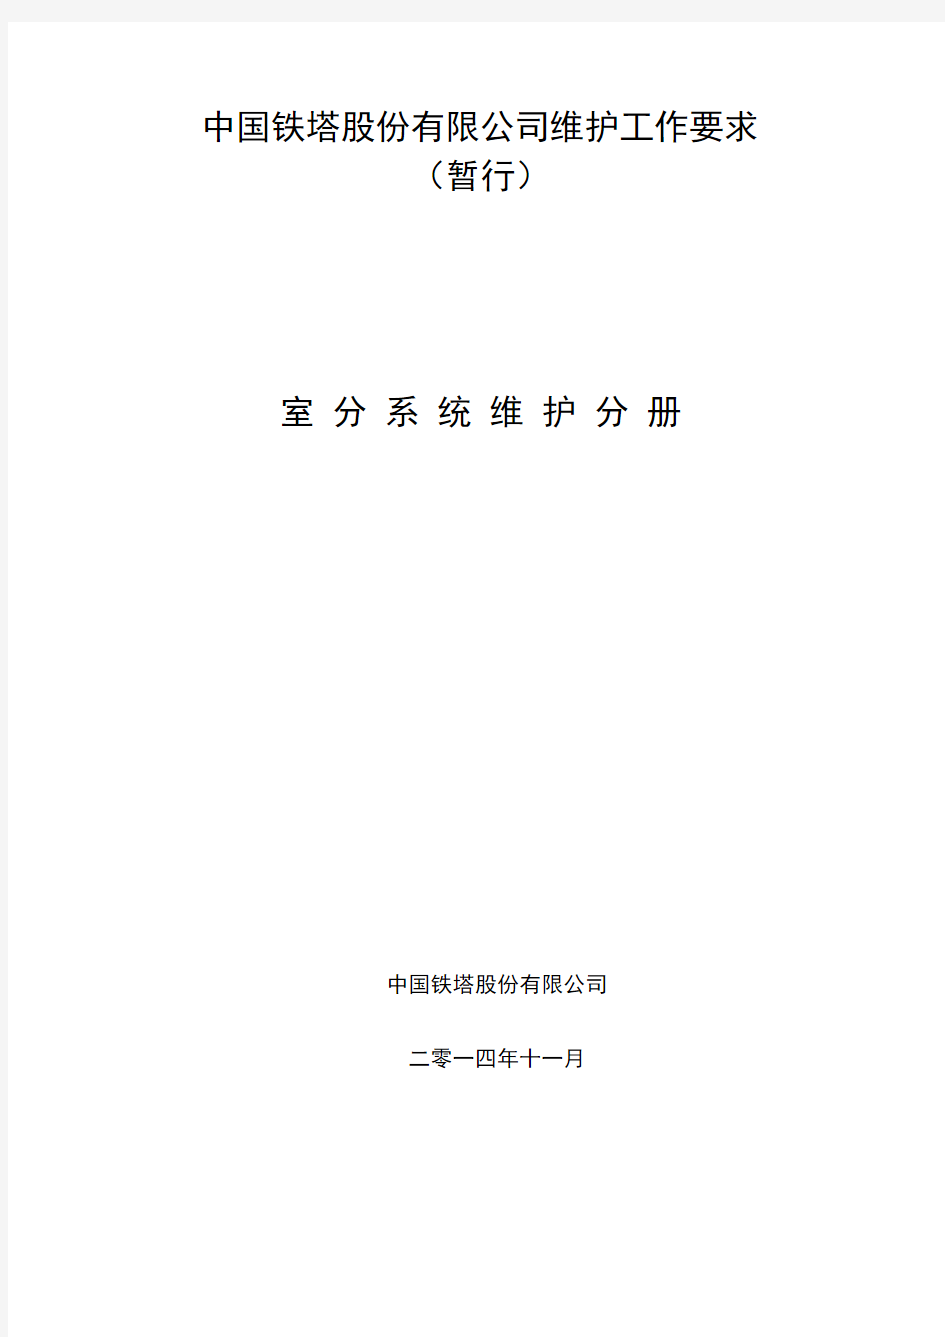 中国铁塔股份有限公司维护工作要求(暂行)-室分系统维护分册v1.0